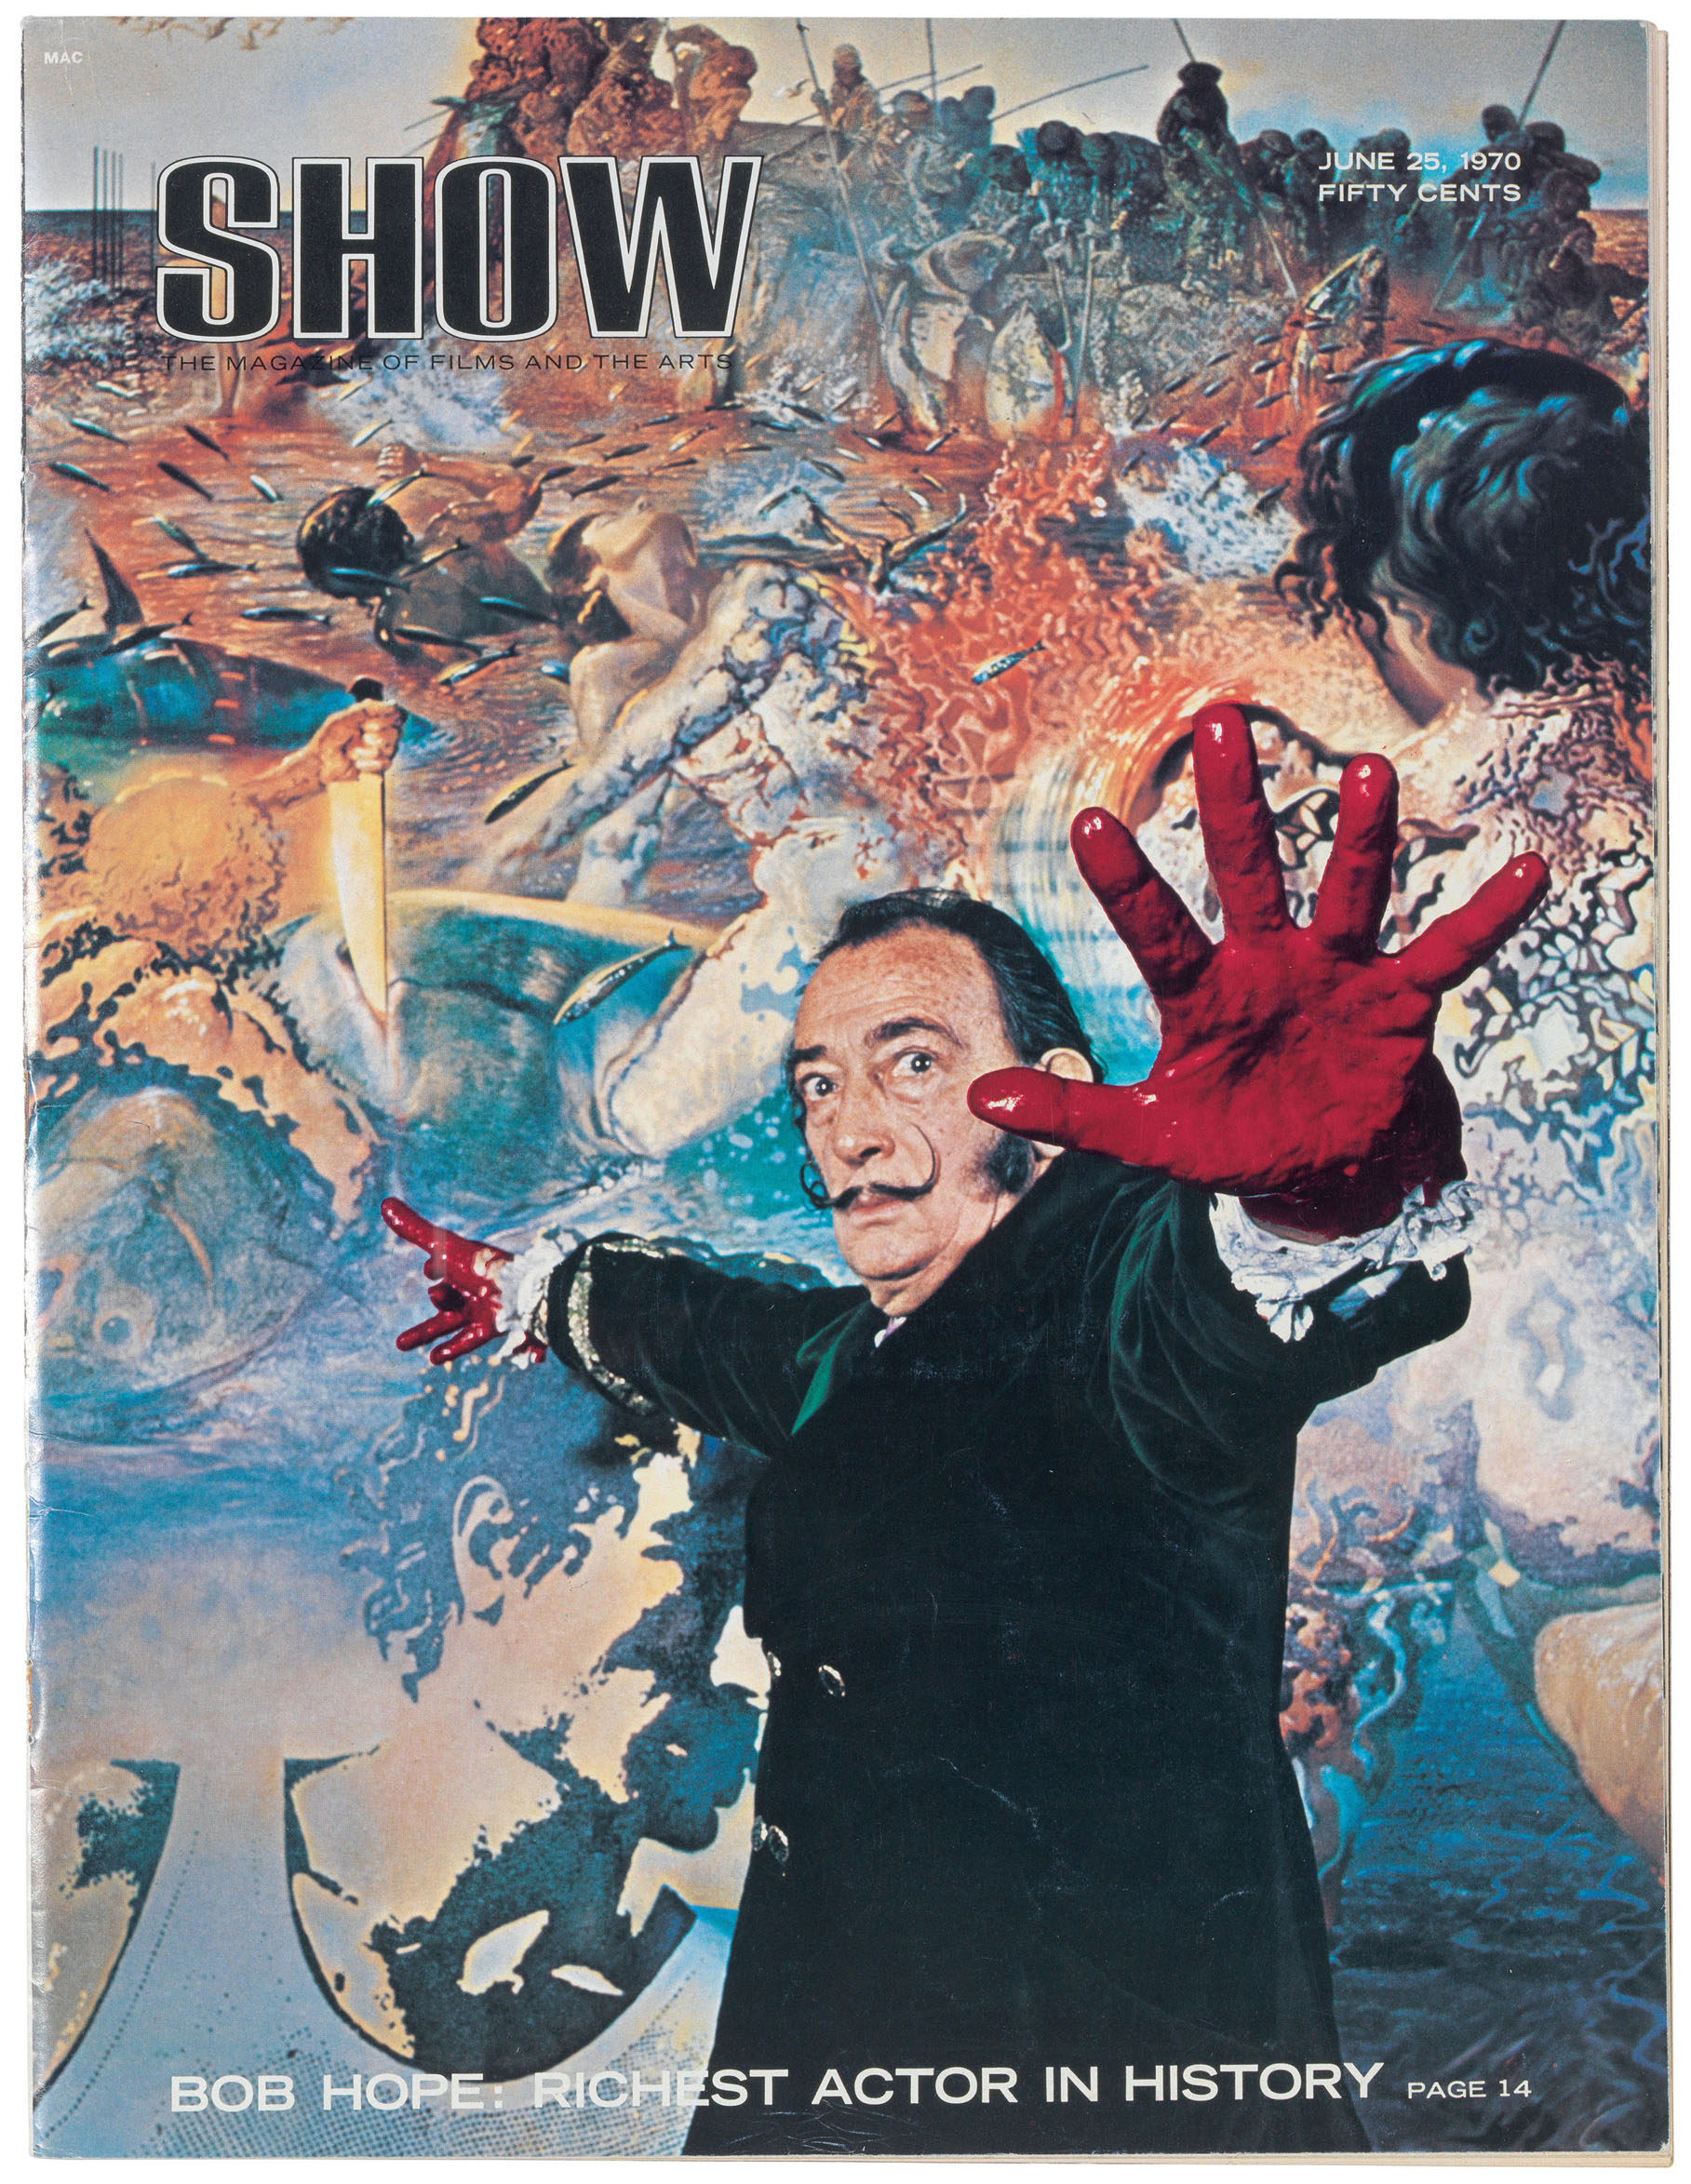 Show
Rivista, vol 1, num. 7
25/06/1970
Fundació Gala-Salvador Dalí, Figueres, 2018